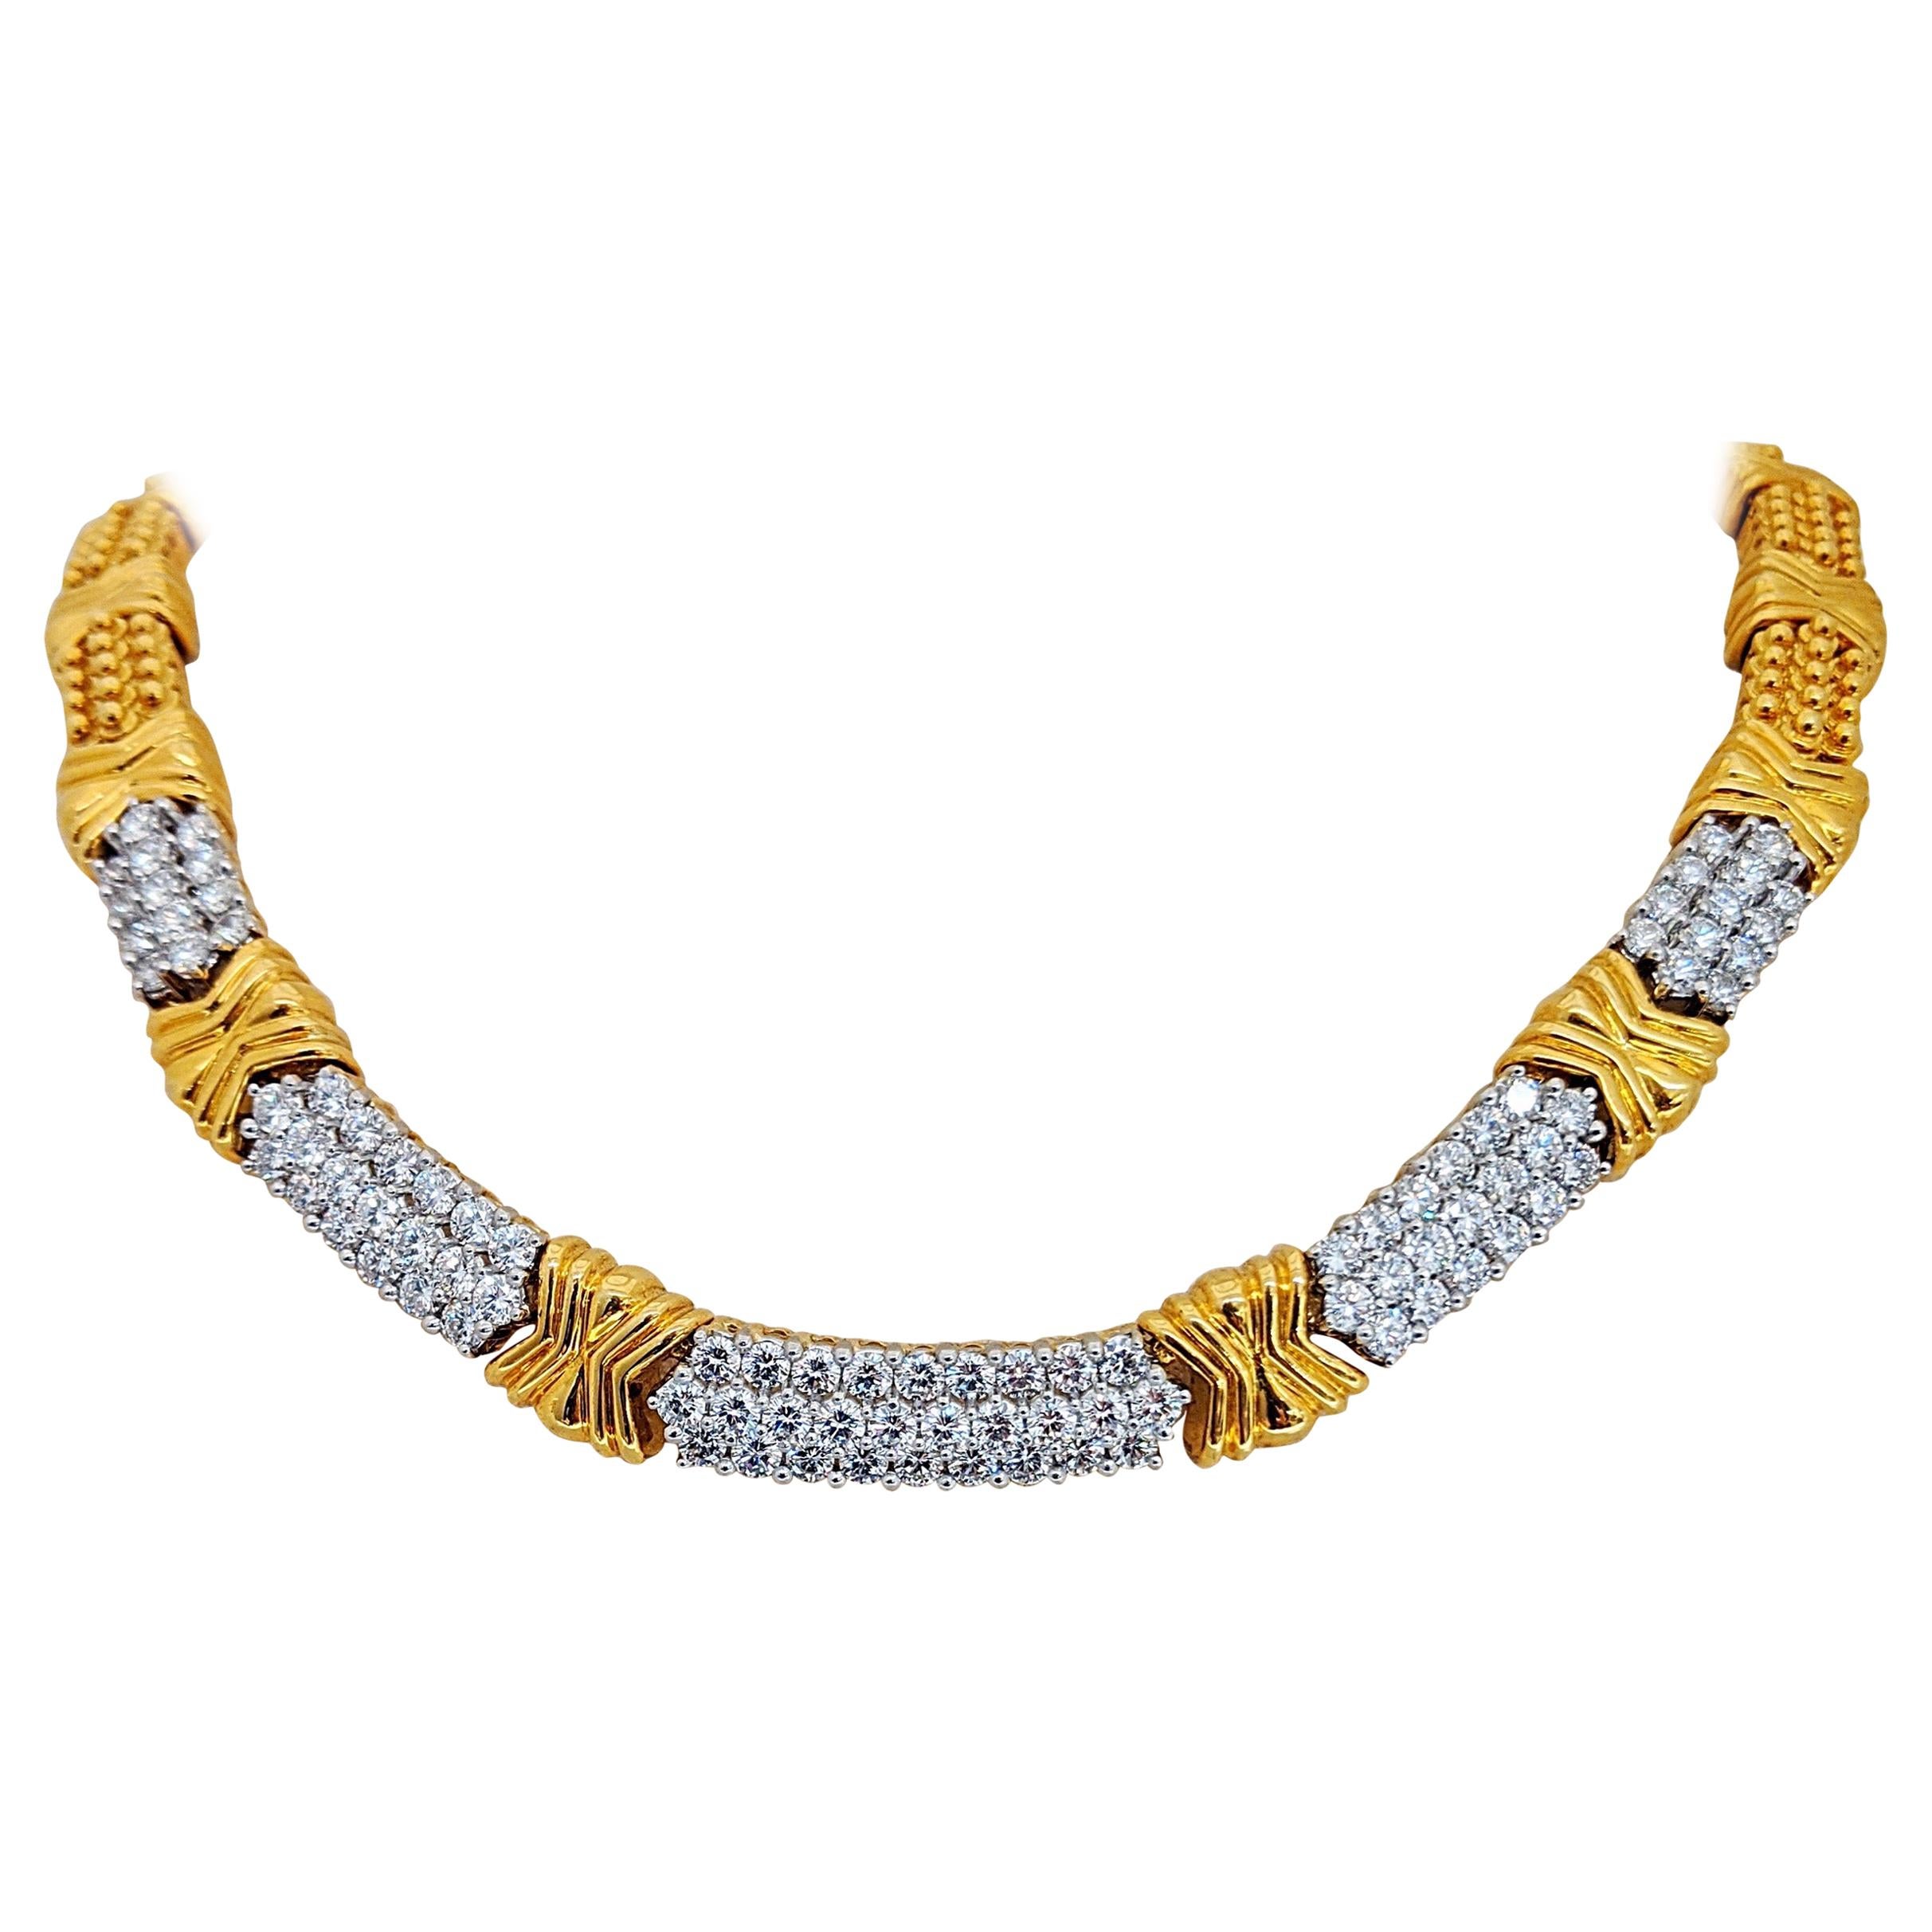 18 Karat Yellow Gold and Platinum 8.28 Carat Diamond Necklace